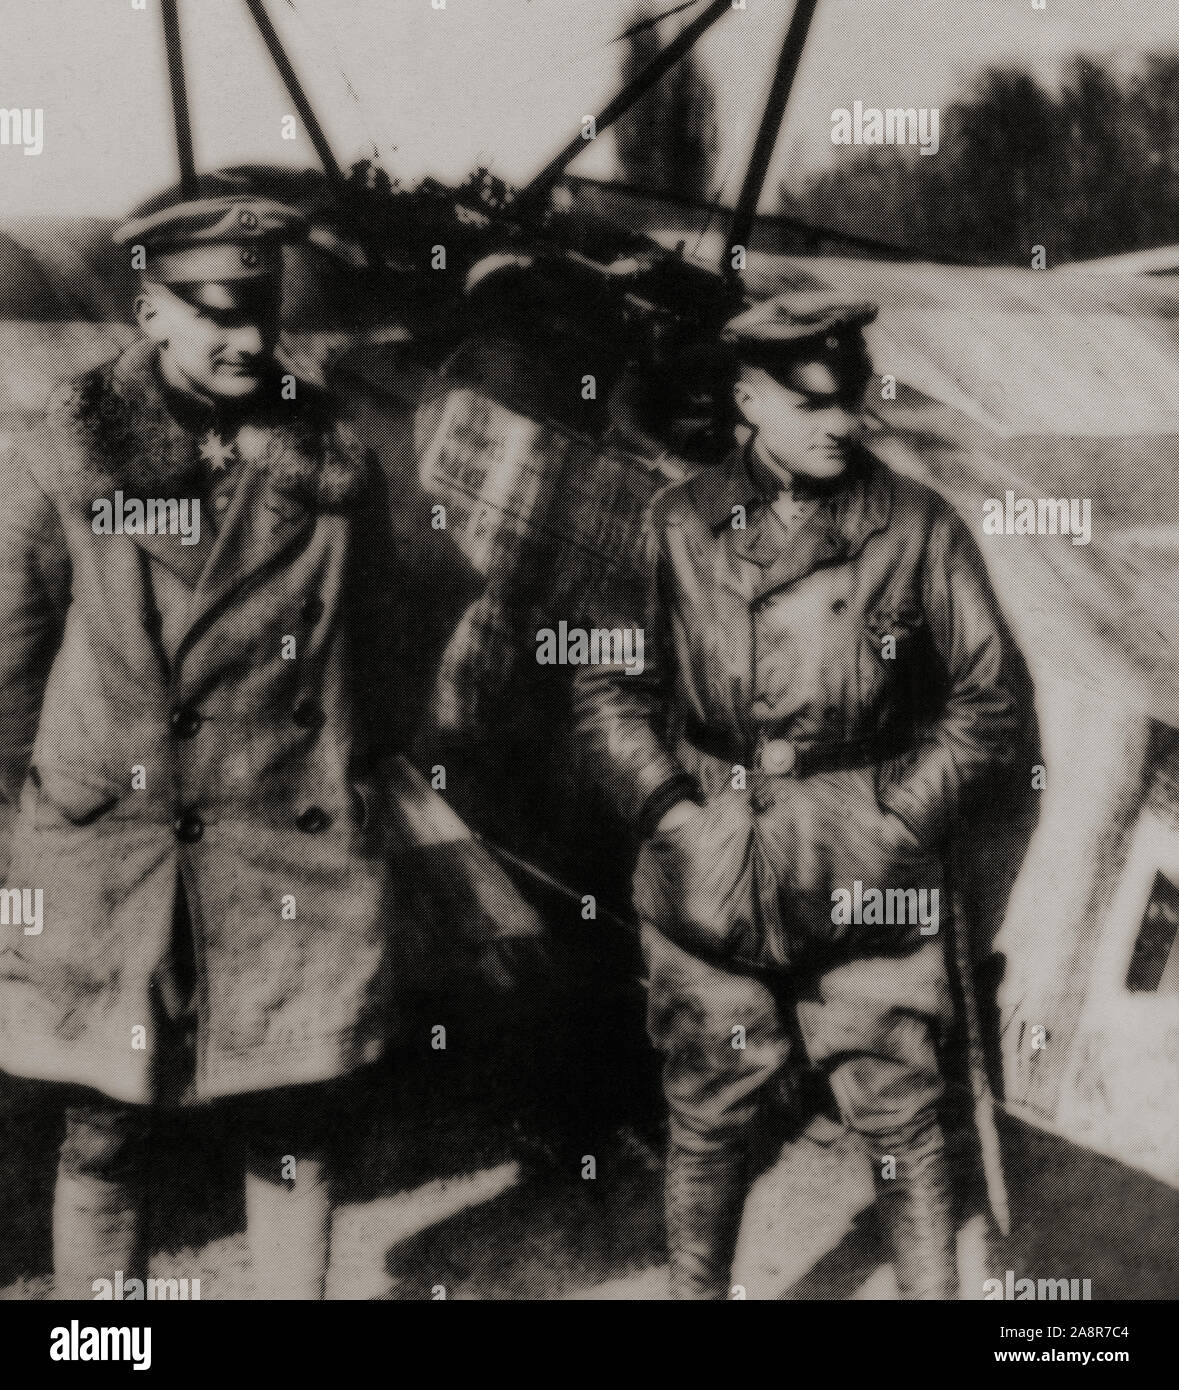 Manfred Albrecht Freiherr von Richthofen (1892-1918), également connu sous le nom de 'Red Baron', (à droite) était un pilote de chasse de la Force aérienne allemande pendant la Première Guerre mondiale. Il est considéré comme l'ace-de-aces de la guerre, d'être officiellement crédité de 80 victoires au combat aérien. Photographié avec son jeune frère Lothar (1894-1922) aussi un Allemand Première Guerre mondiale fighter ace crédité de 40 victoires. Banque D'Images